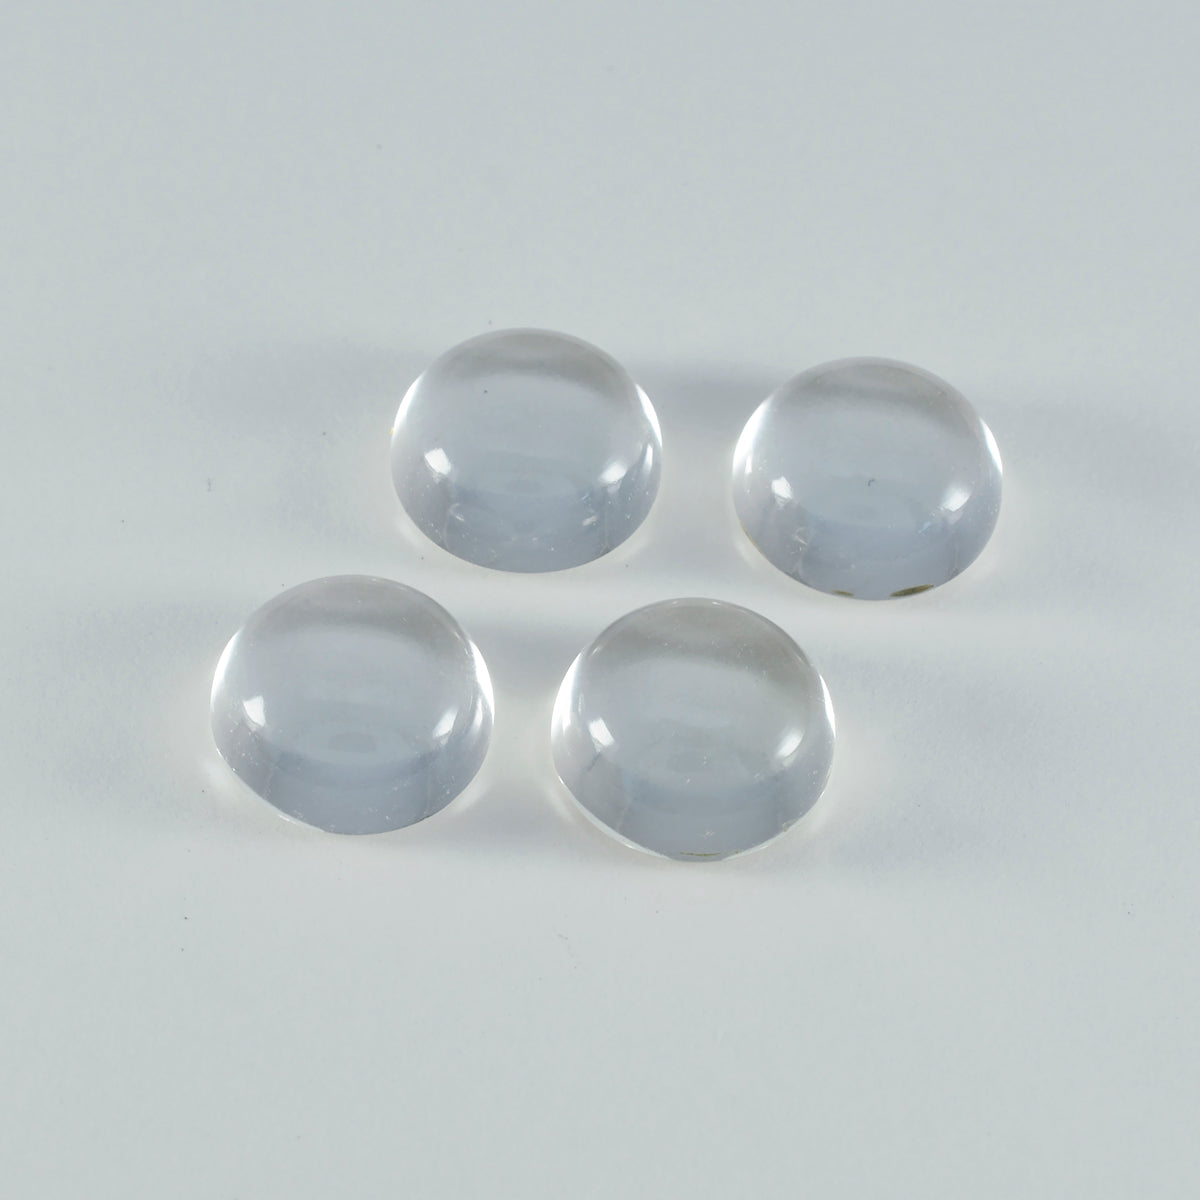 Riyogems 1 cabujón de cuarzo de cristal blanco de 10 x 10 mm, forma redonda, piedra preciosa de buena calidad